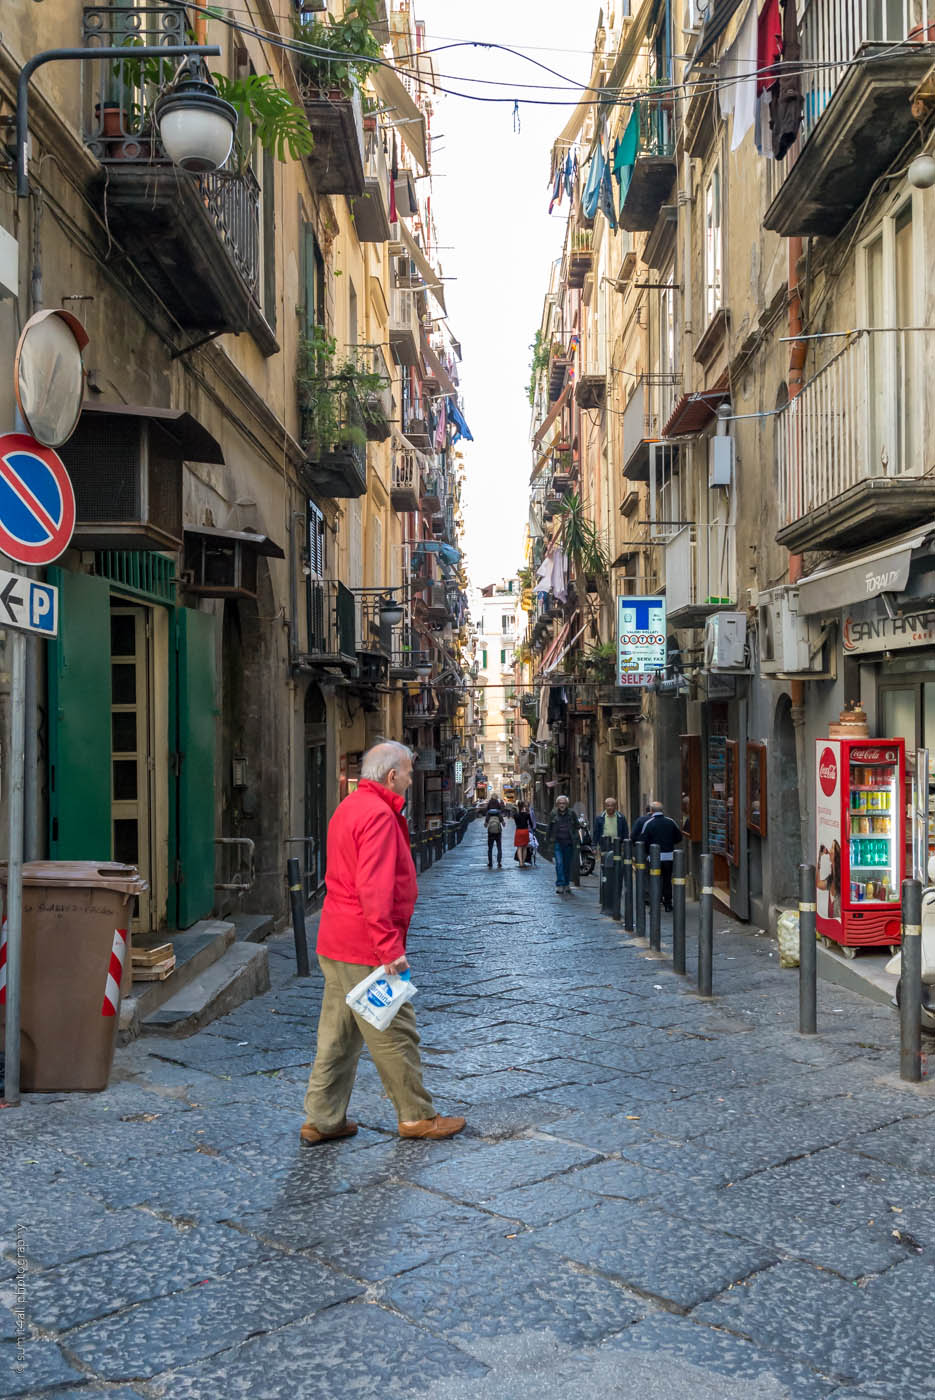 A Street Scene in Naples, Italy